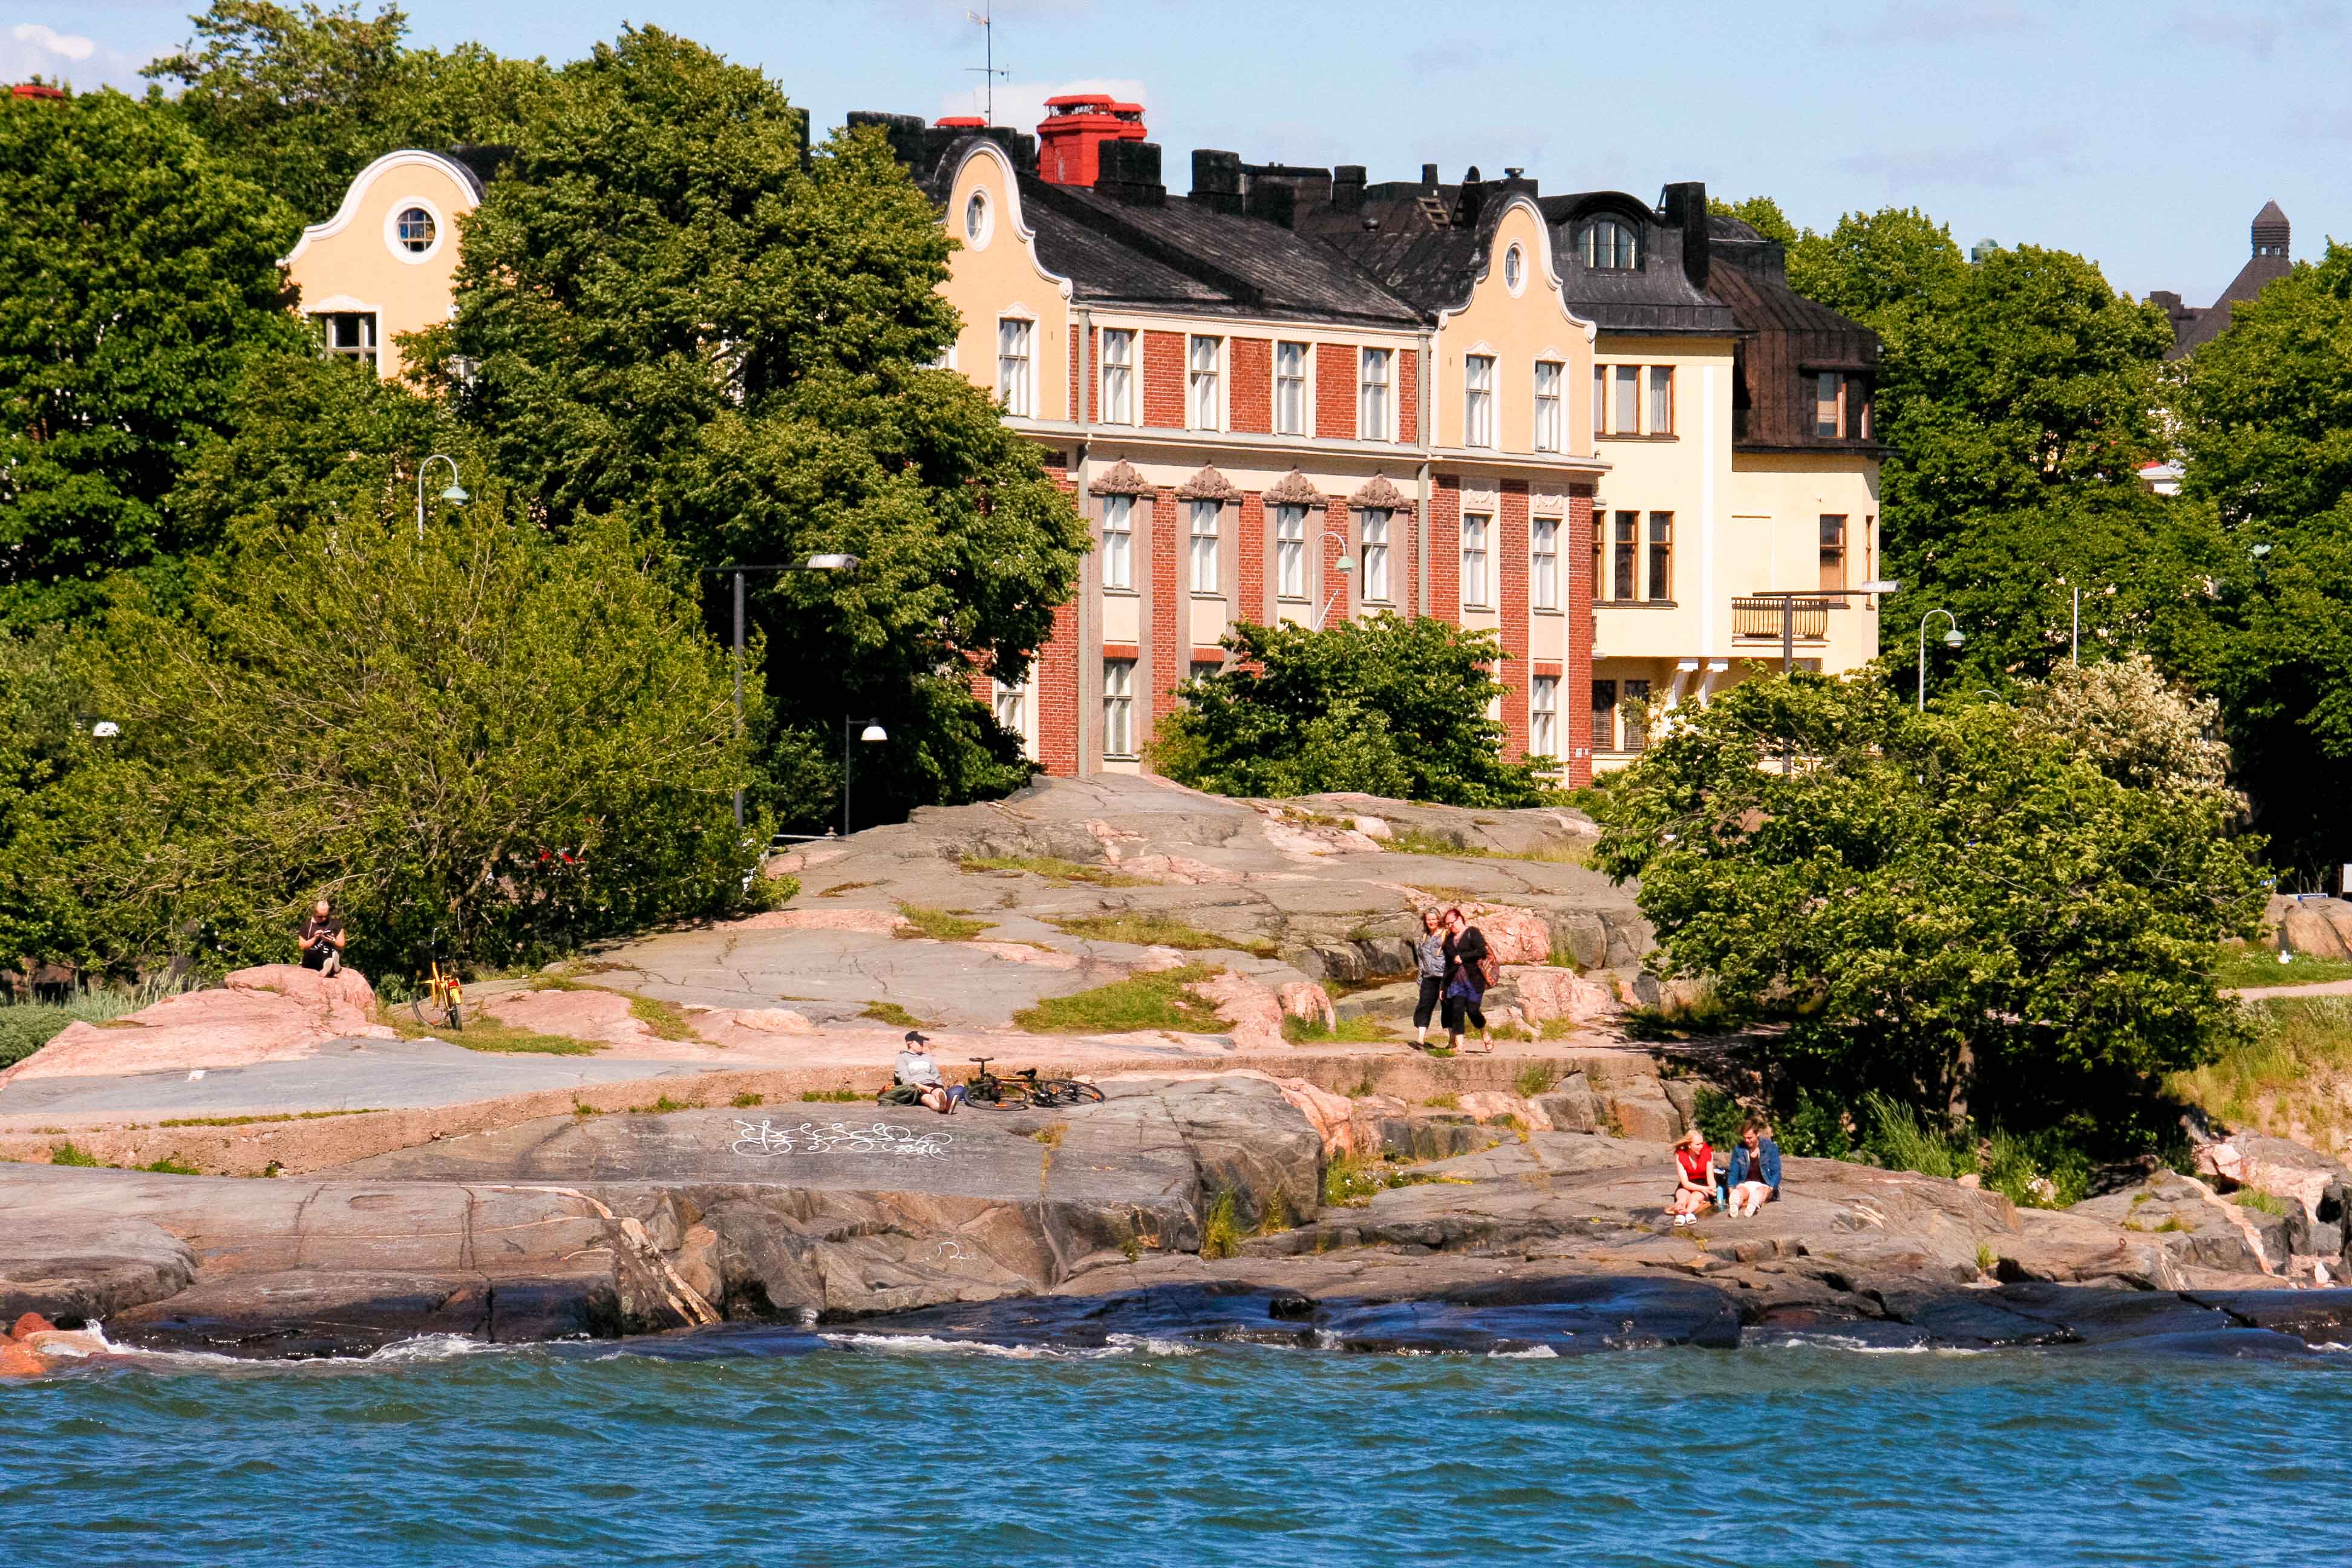 ヘルシンキのカイヴォプイスト公園の海岸線から撮影された、アールヌーボー様式の建築を示す風景写真